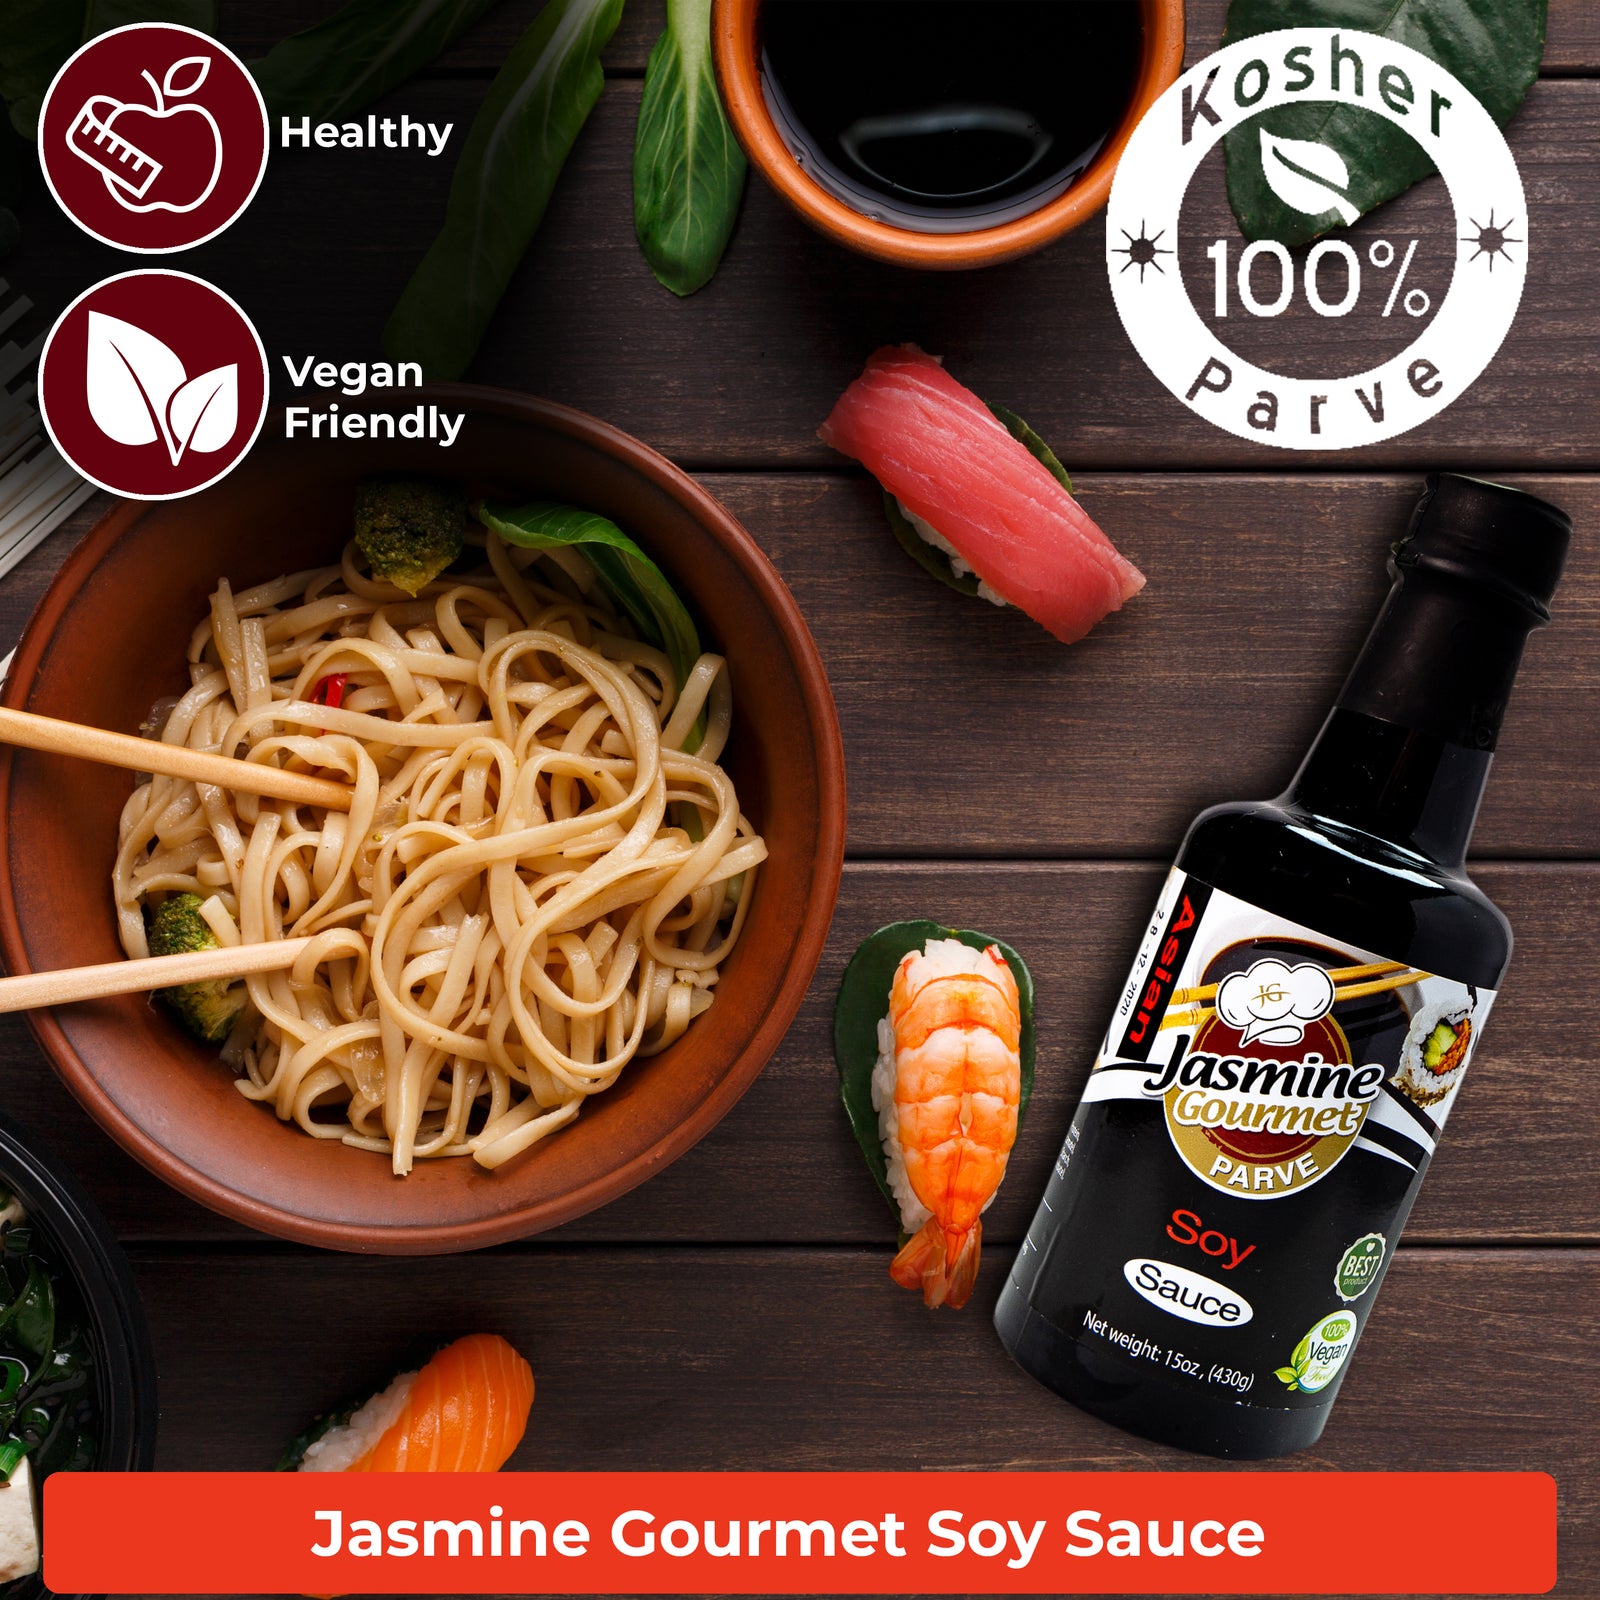 Jasmine Gourmet Soy Sauce